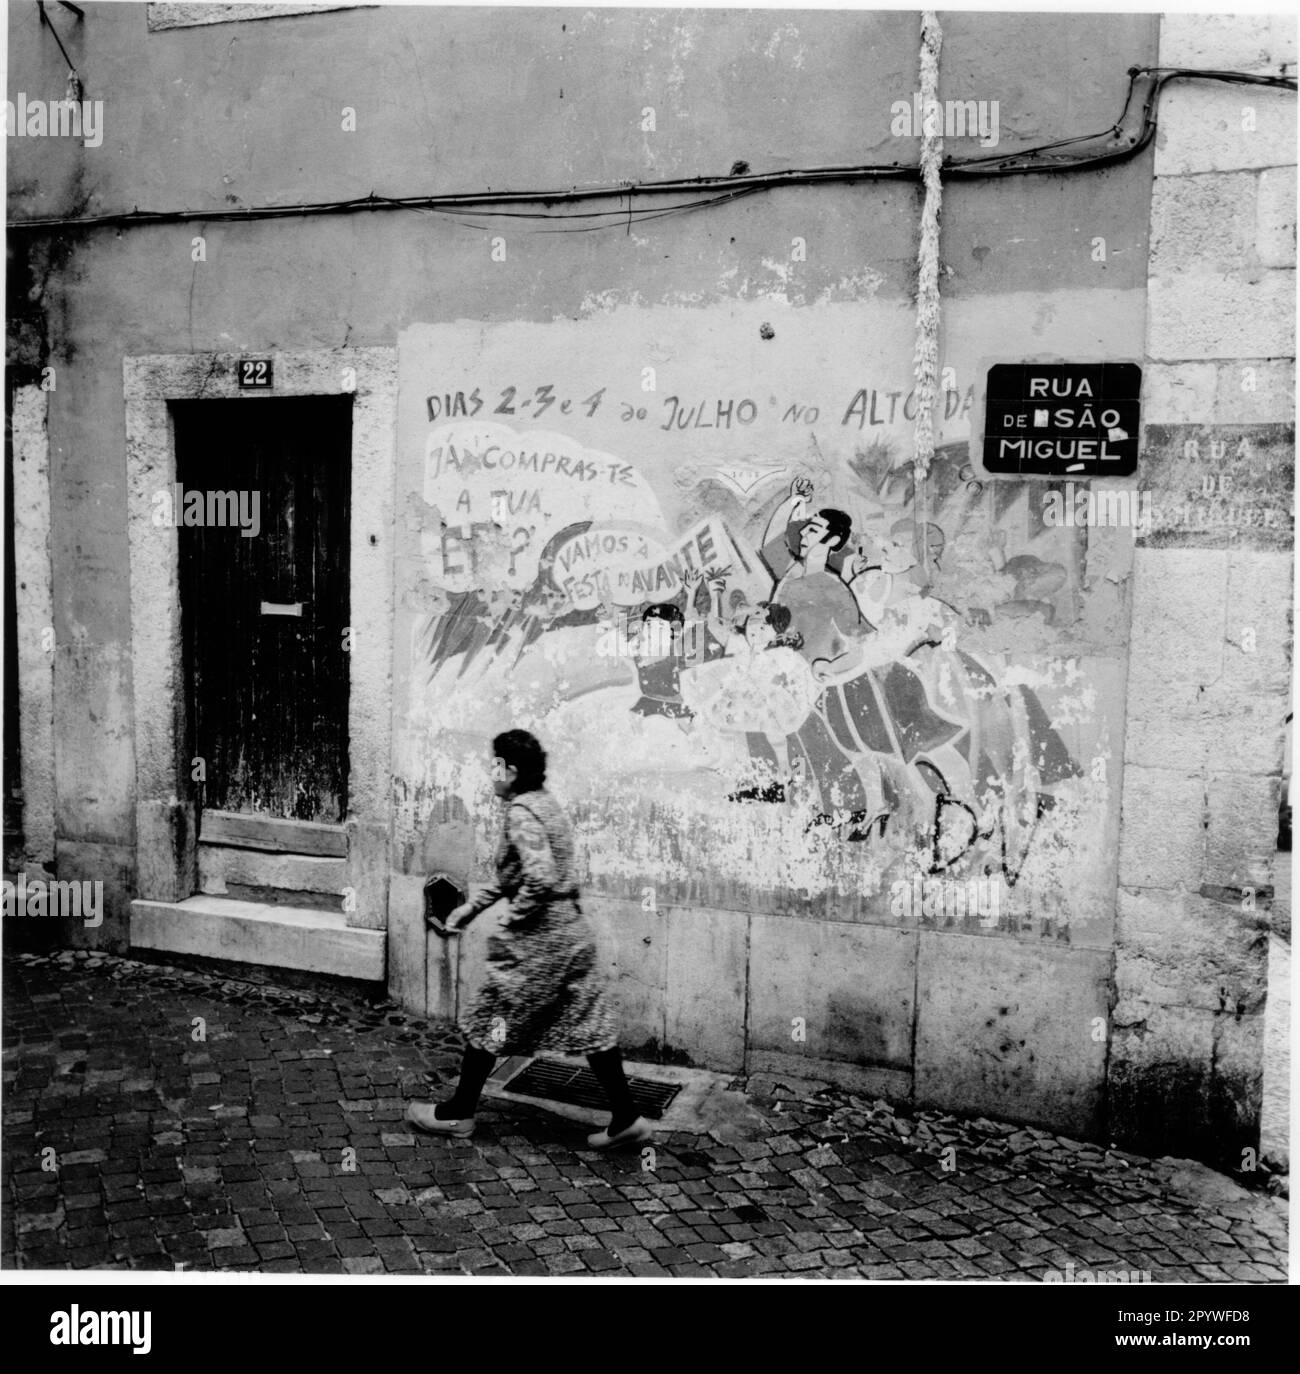 Lissabon - Lisboa (Portugal), Alfama, Rua de Sao Miguel. Straßenszene mit Blick auf Haus Nr. 22 mit politischem Wandgemälde. Eine Frau läuft die Straße entlang. Schwarz-Weiß, 6 x 6 cm Negativ. Foto, 1992. Stockfoto